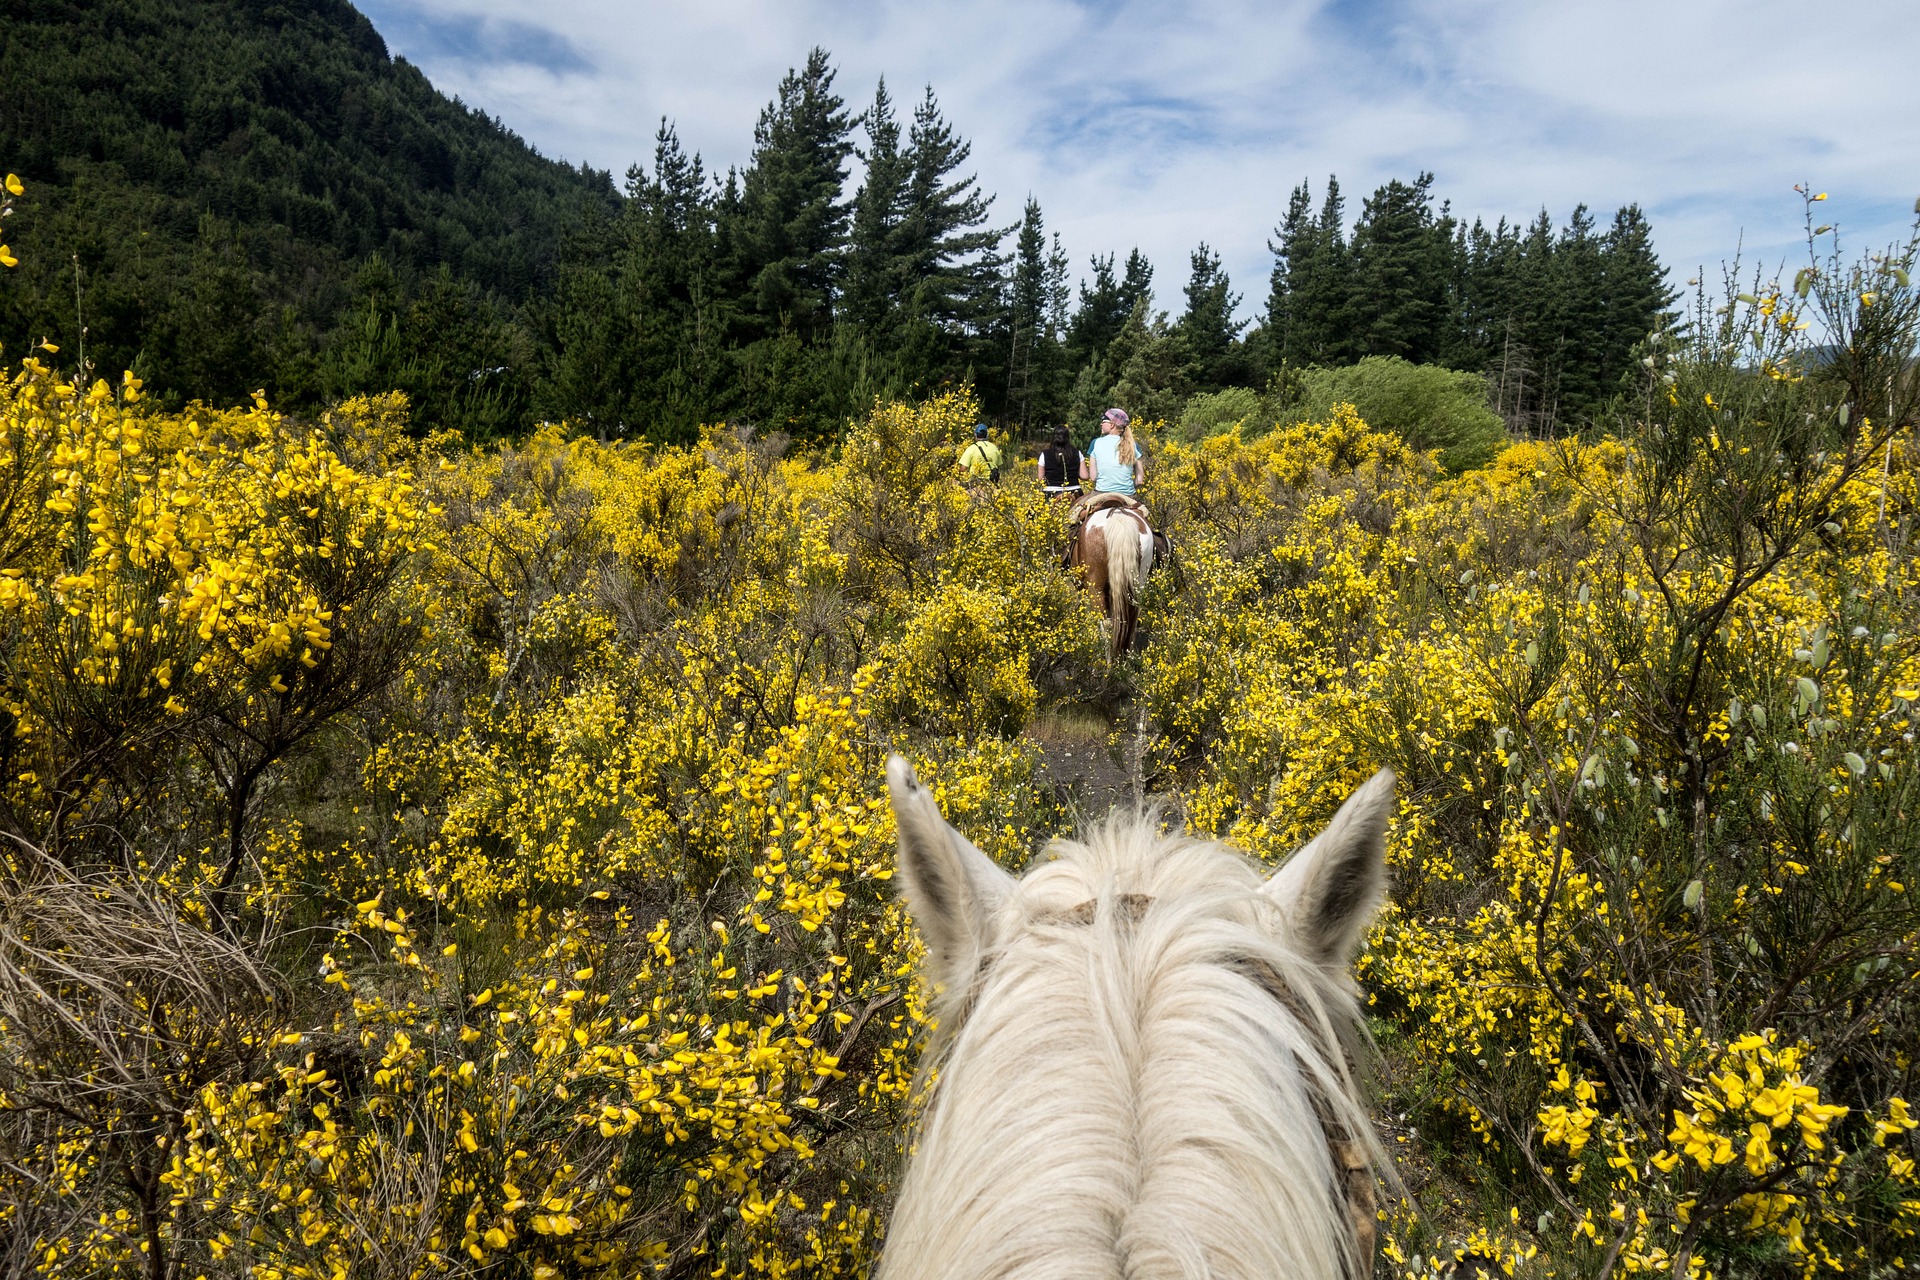 Enjoy Sun Valley horseback riding